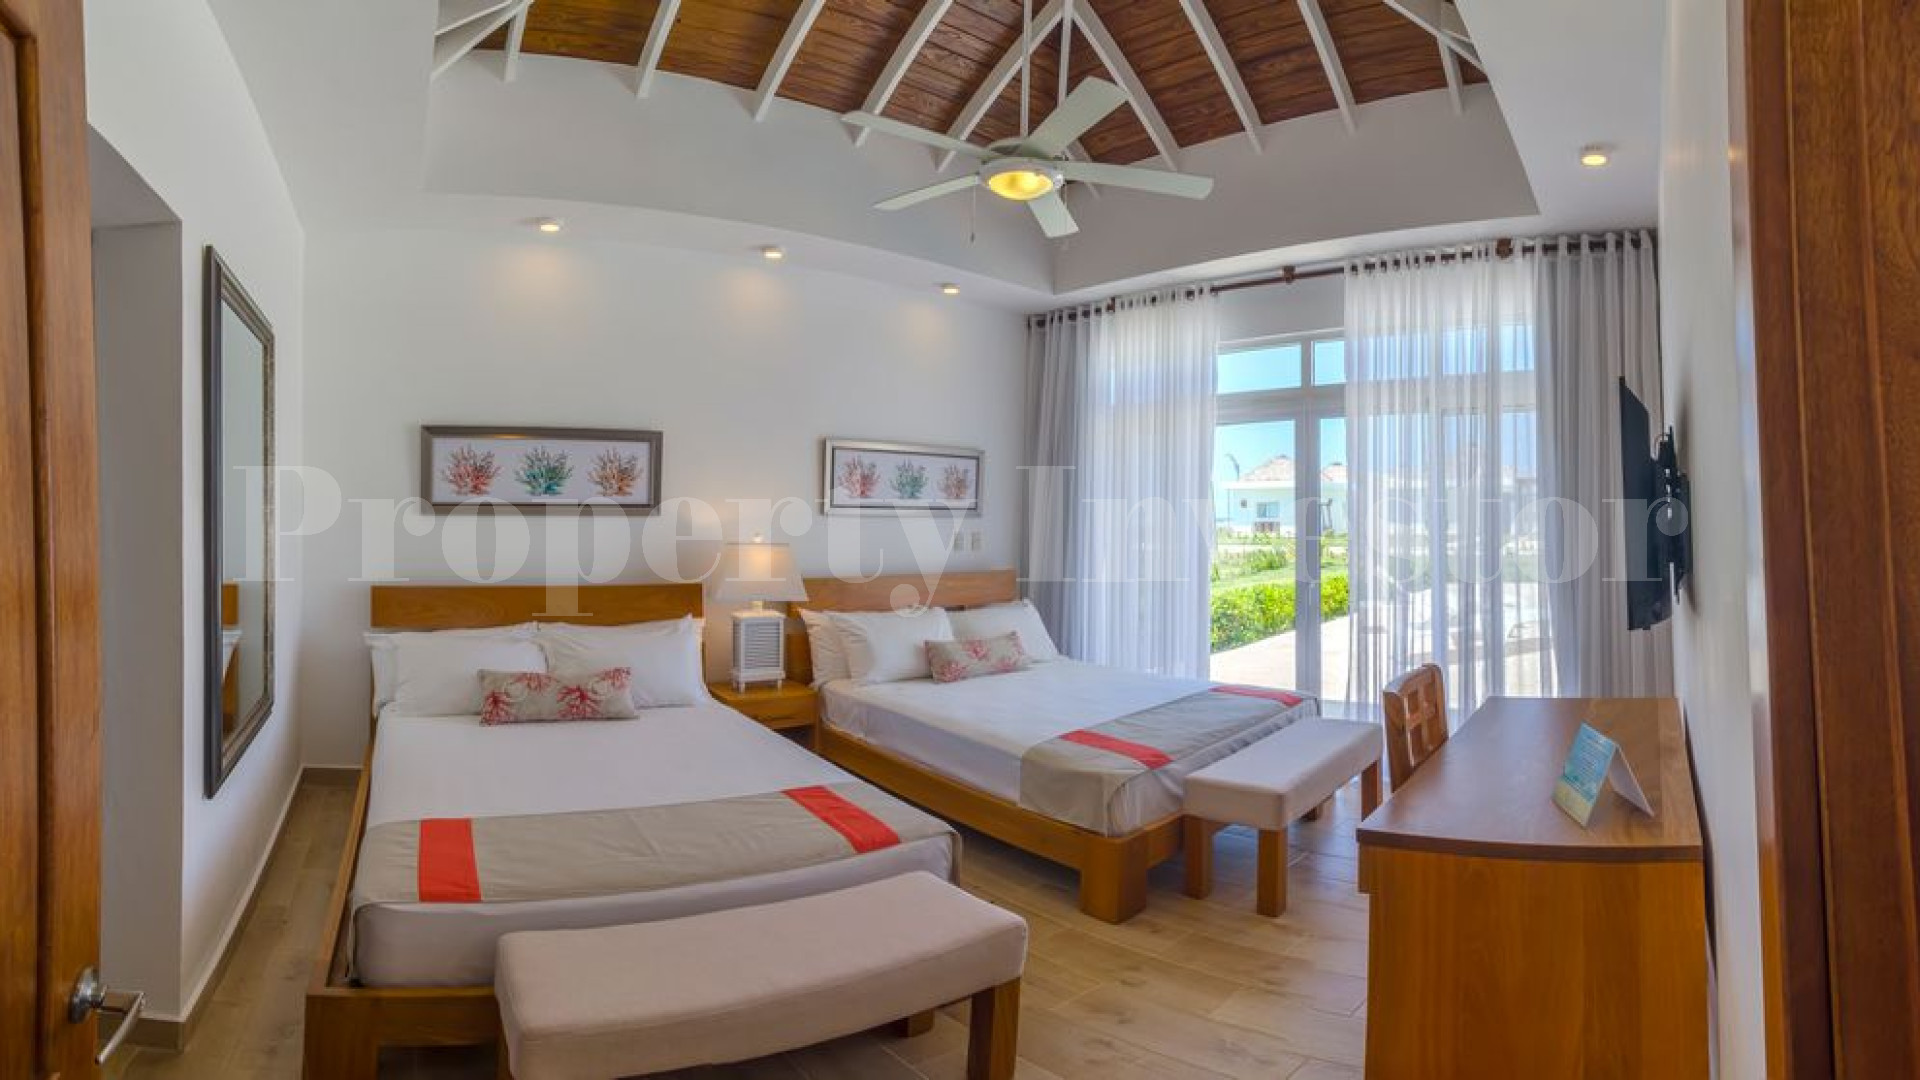 Вилла с 2 спальнями с видом на море в Доминиканской Республике с финансированием на 30 лет (Вилла 24)